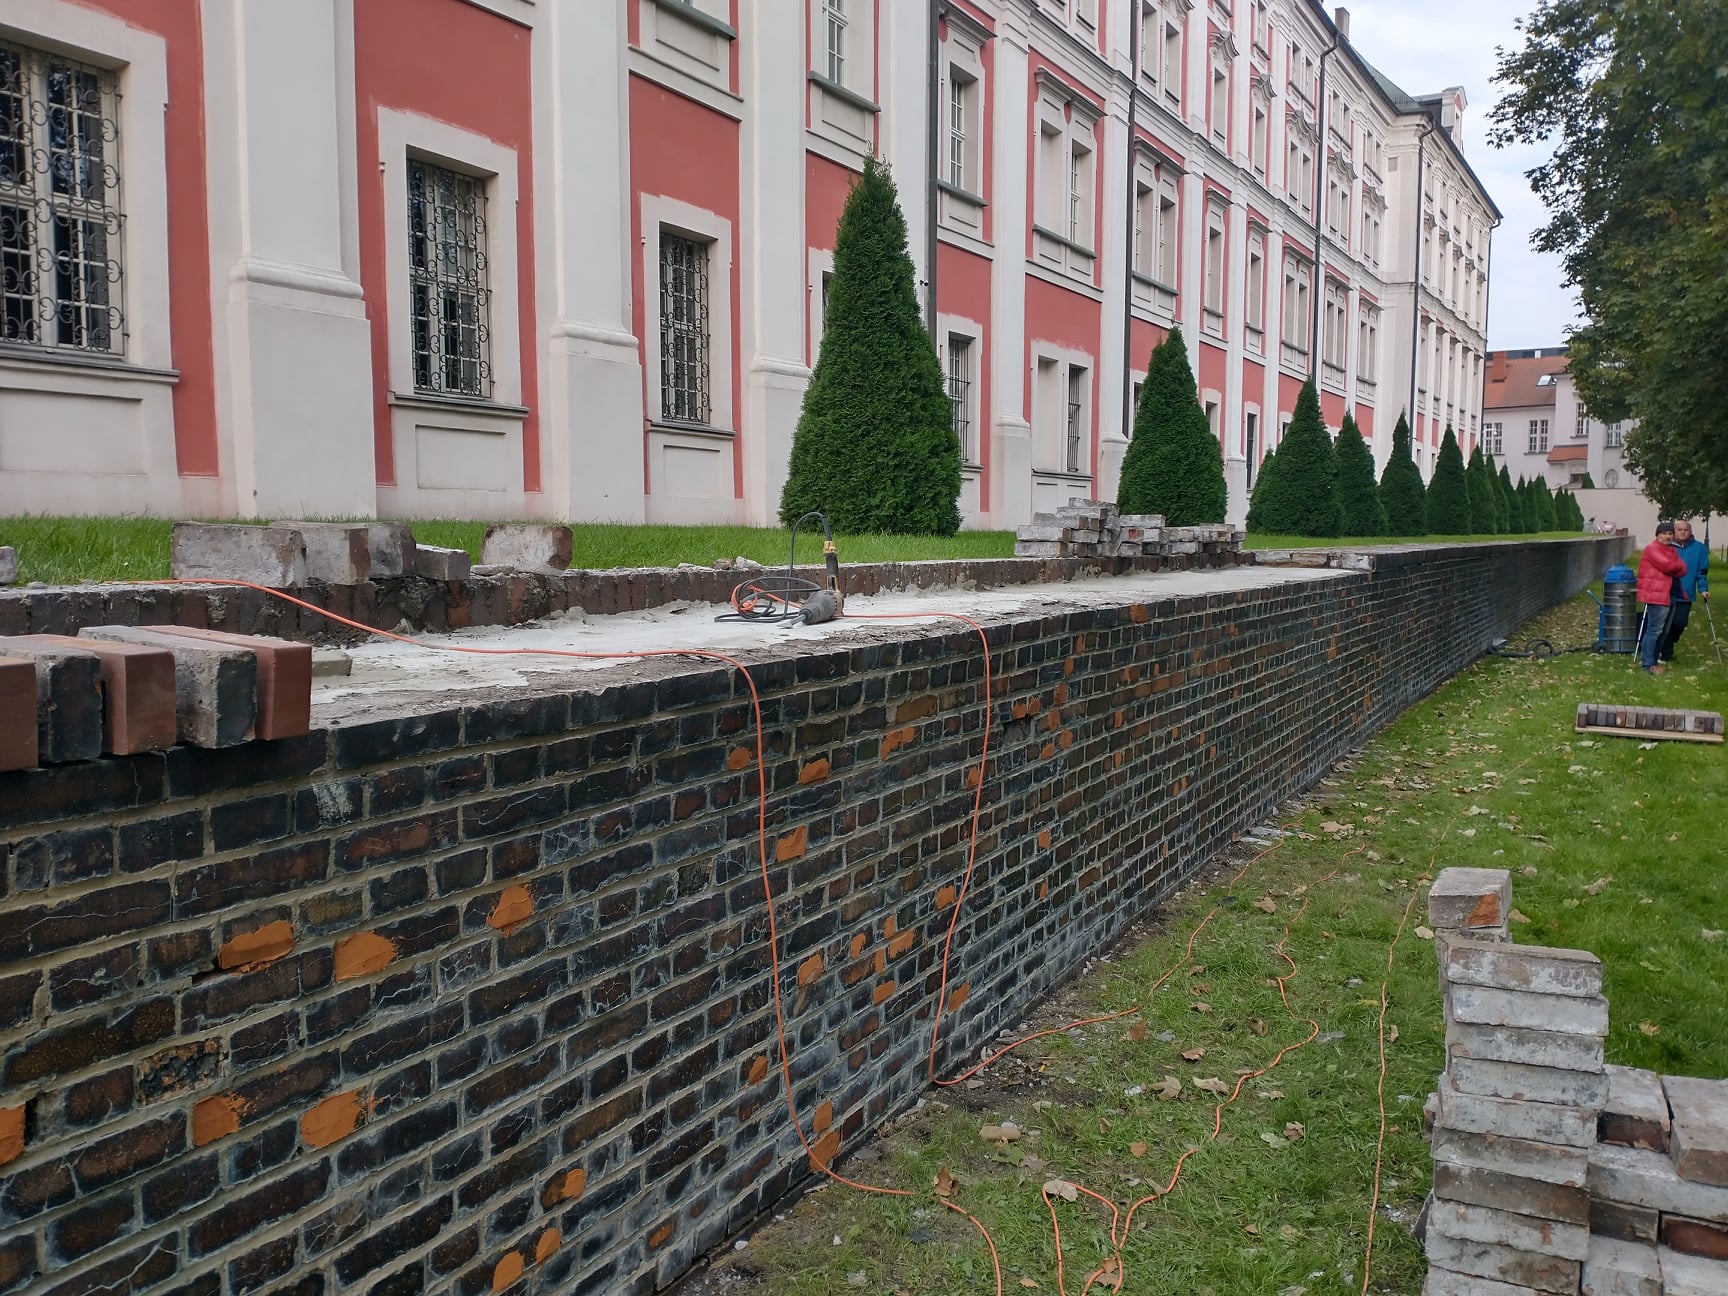 Prace remontowo-rewitalizacyjne w Parku im. Chopina. Jaka jest historia tego miejsca?